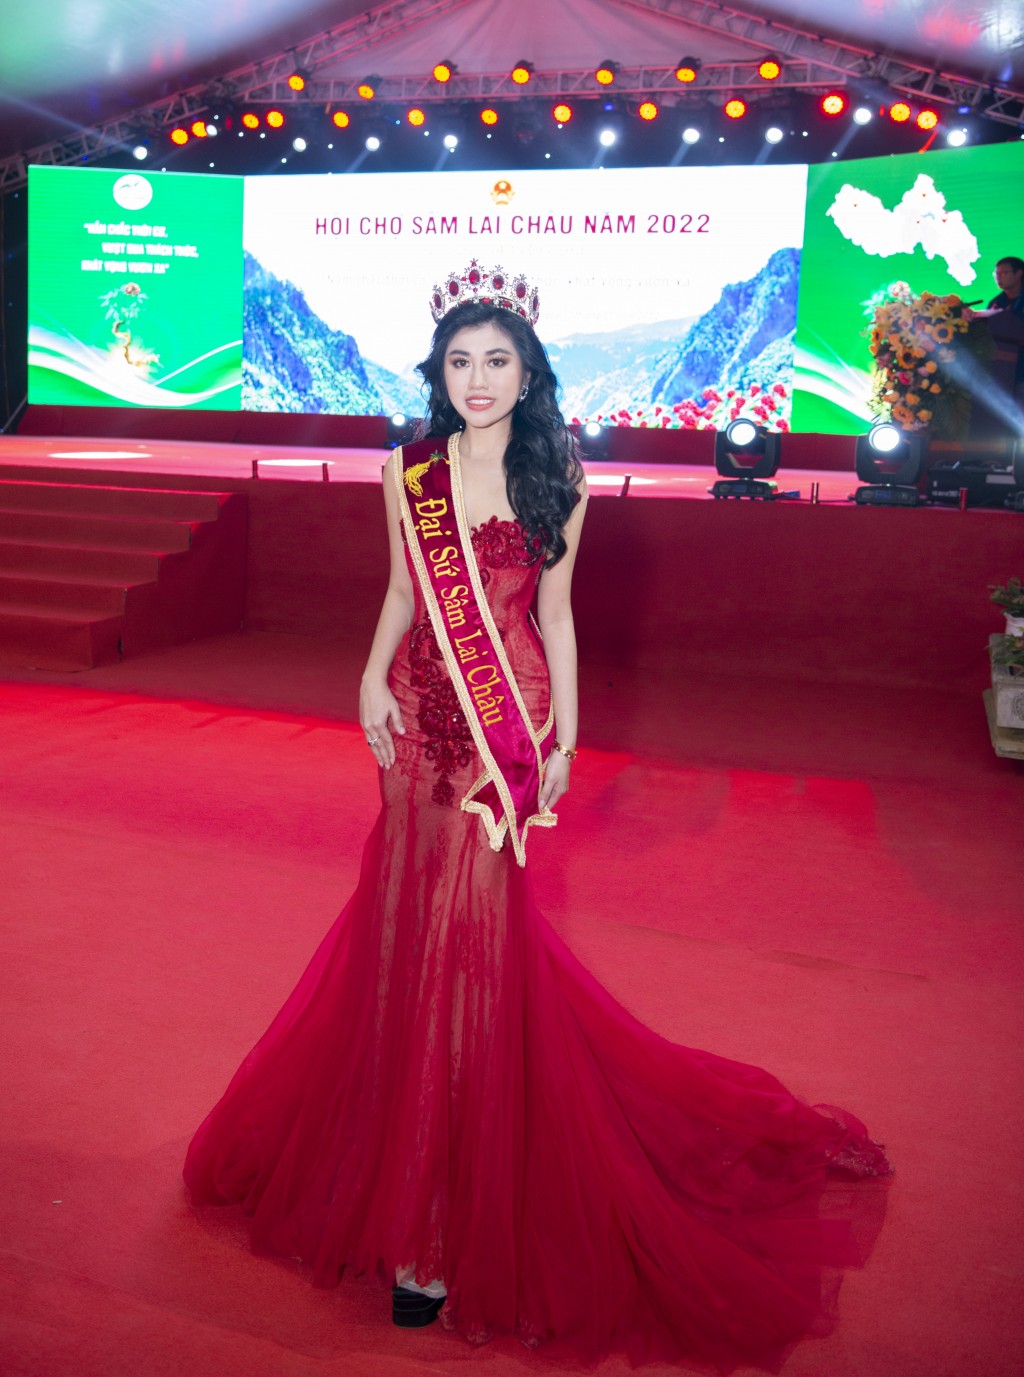 Hoa hậu Emily Hồng Nhung vinh dự được chọn làm Đại sứ Sâm Lai Châu